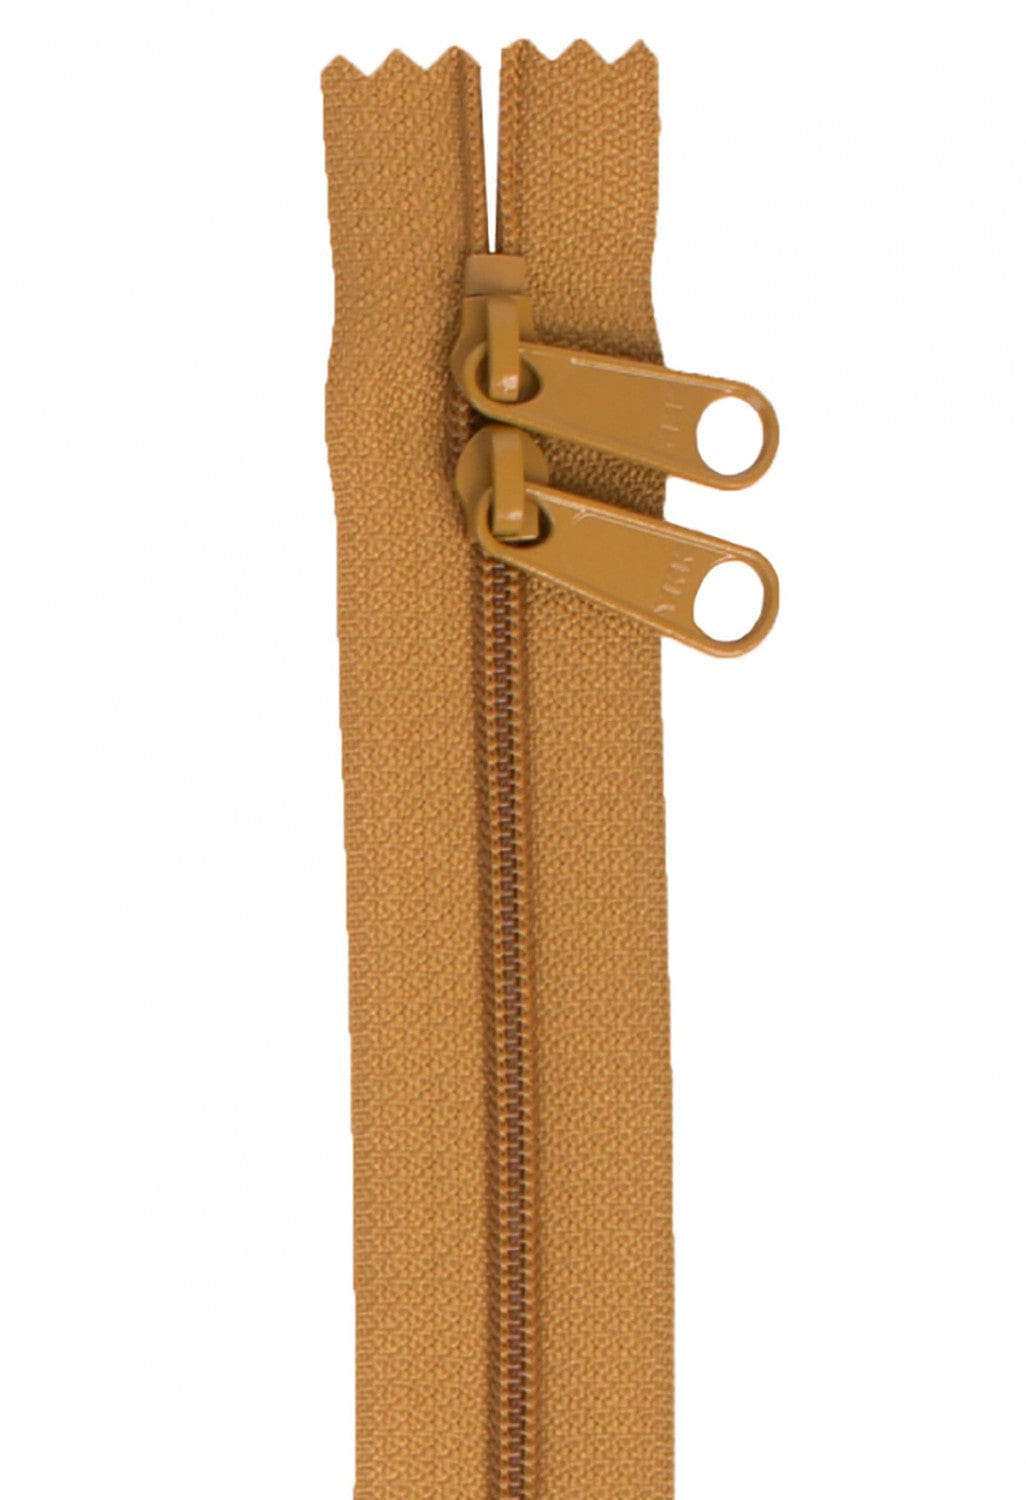 30" Long Double Slide Handbag Zipper in Golden Brown